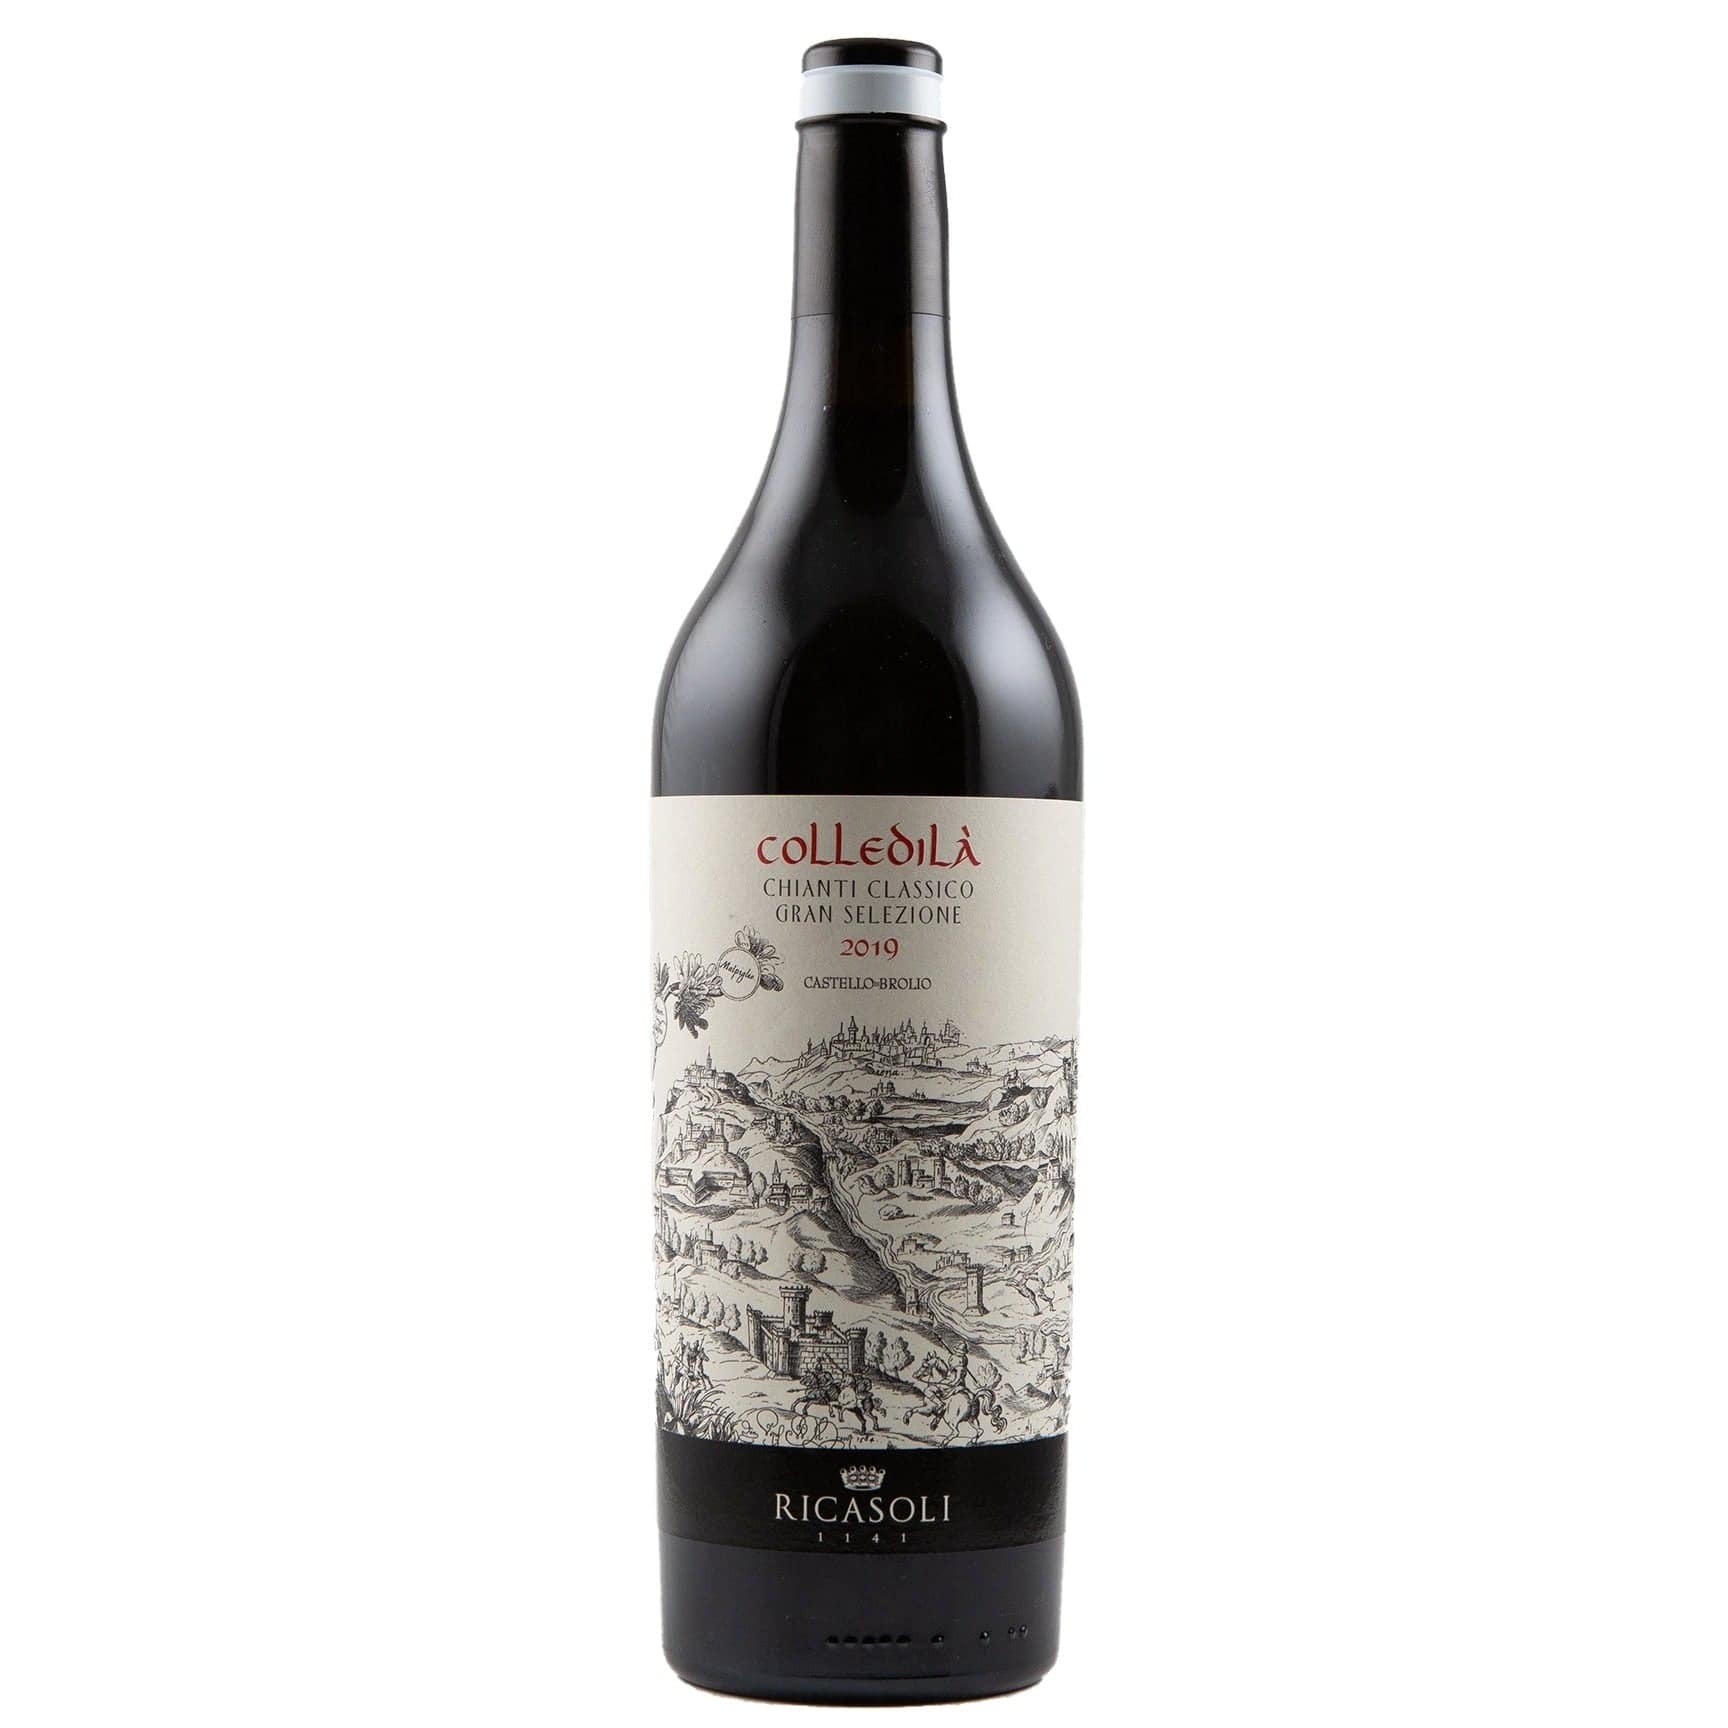 Single bottle of Red wine Barone Ricasole, Chianti Gran Selezione Colledila, Chianti Classico, 2019 100% Sangiovese